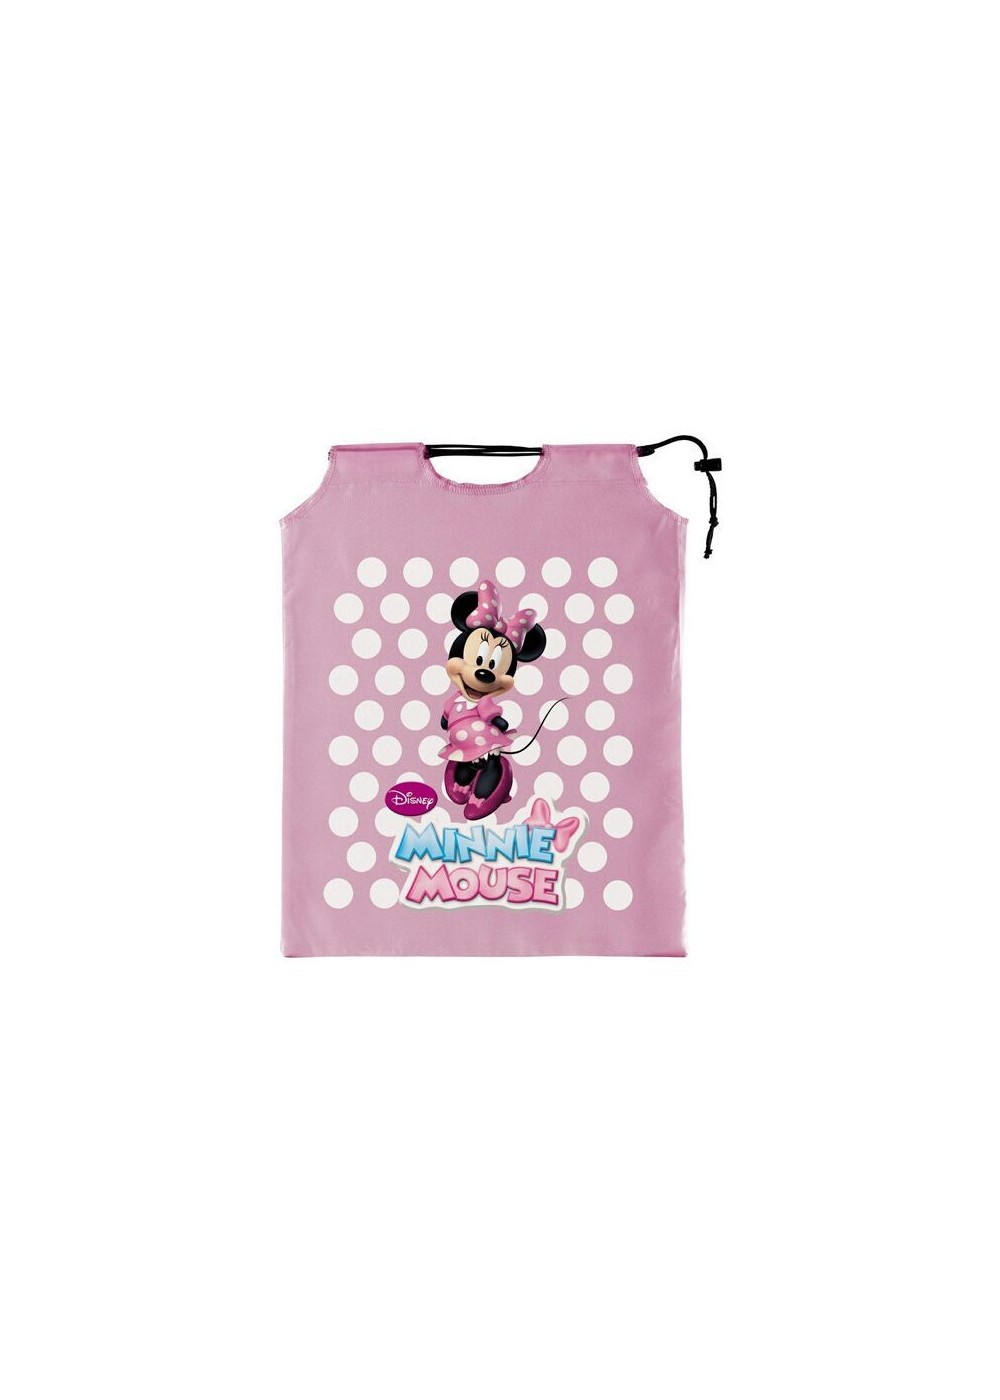 Minnie Mouse Treat Bag Sacks Set